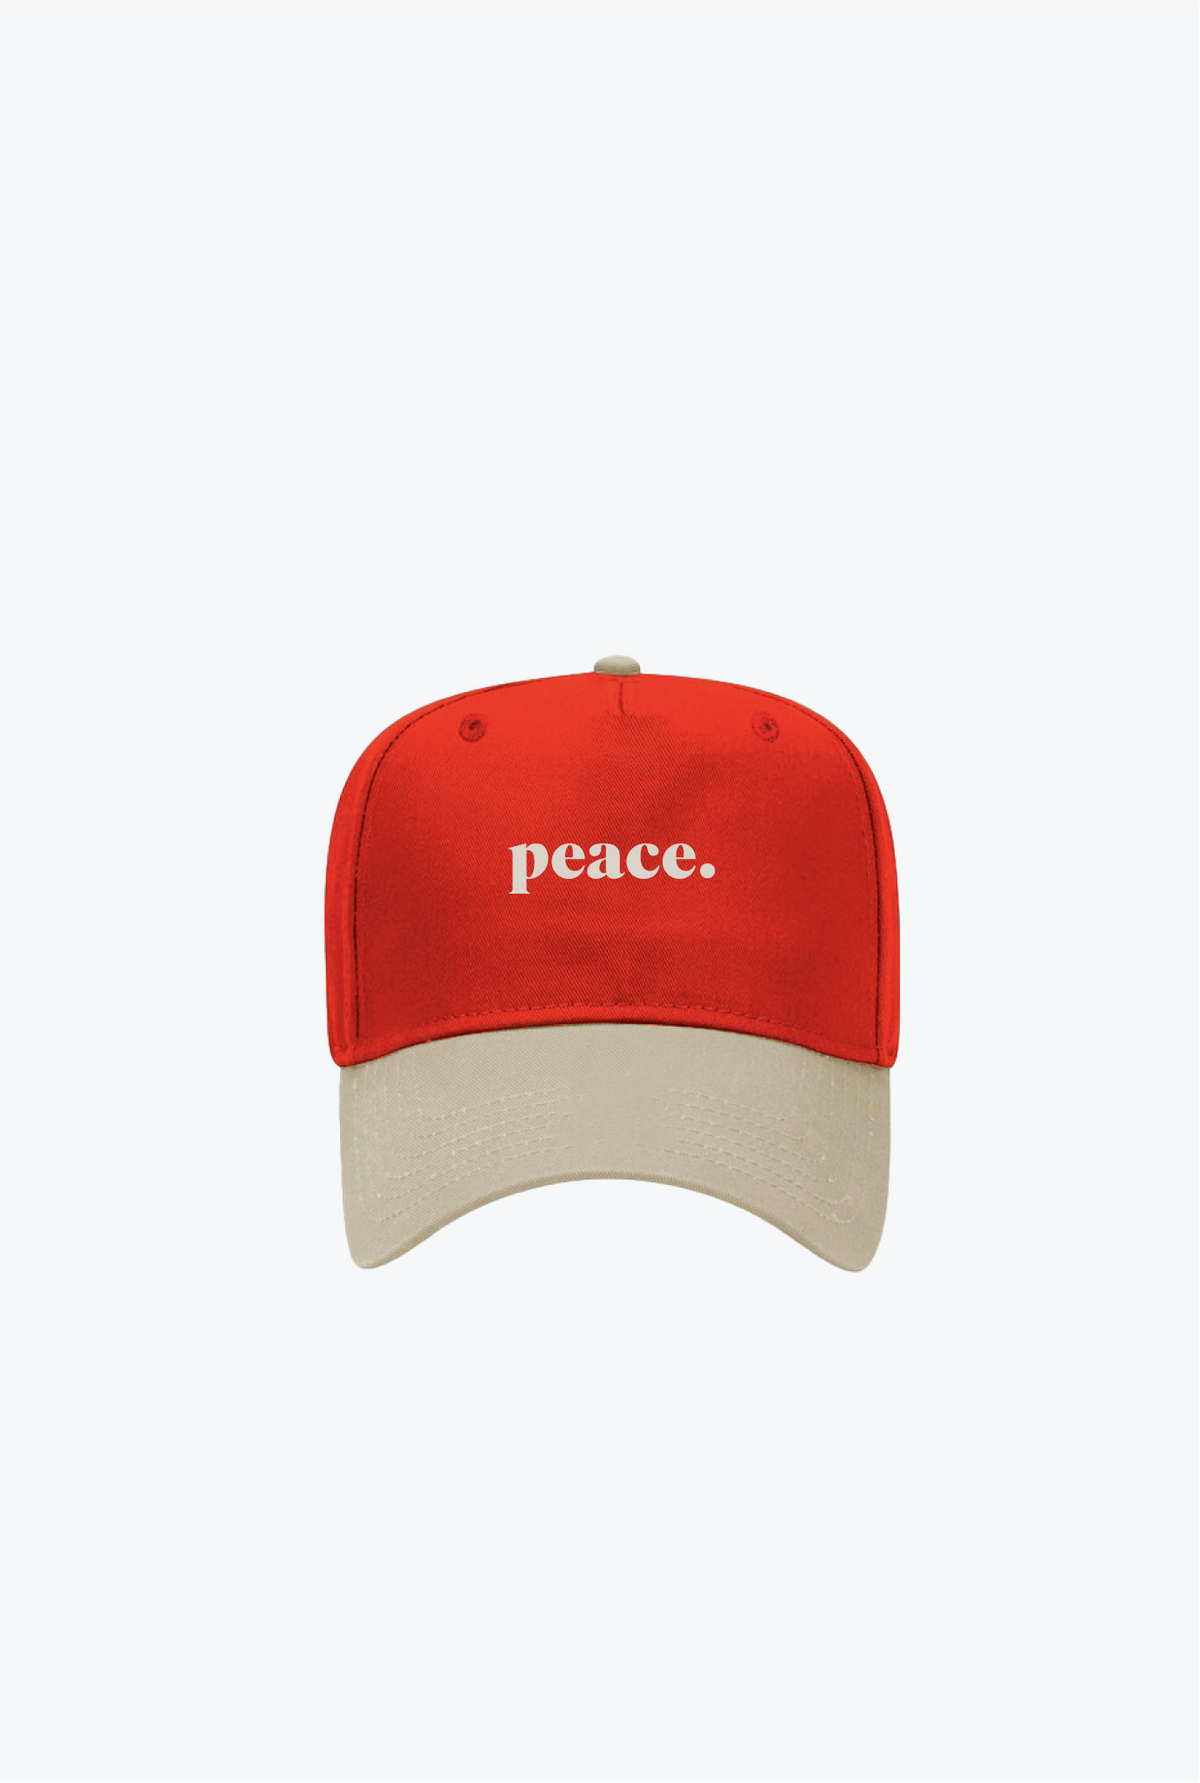 Peace A-Frame Cap - Red/Cream